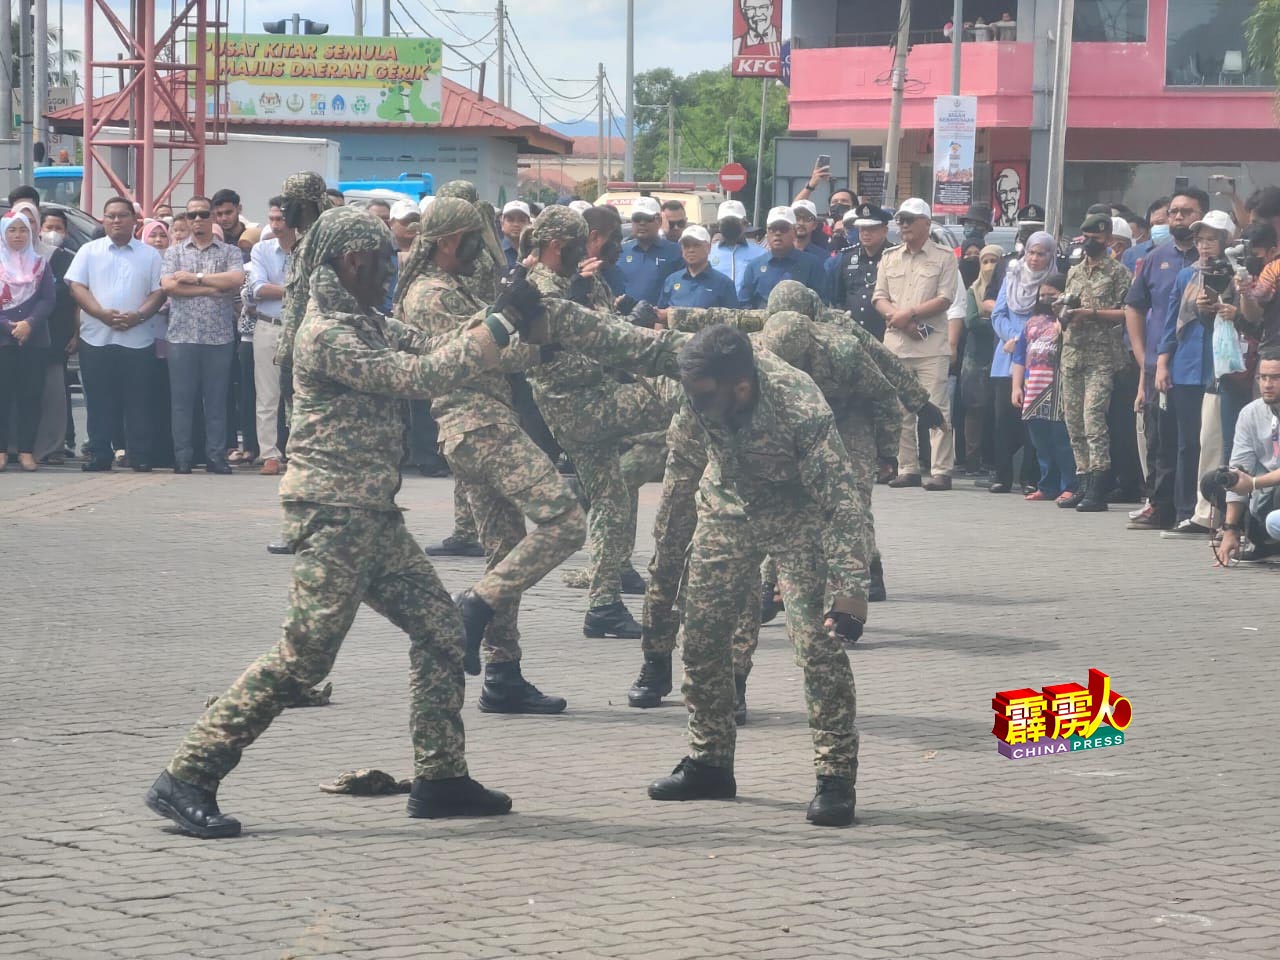 来自霹雳州美罗第3兵营的警察普通行动部队22名成员，呈现精彩的自卫术。